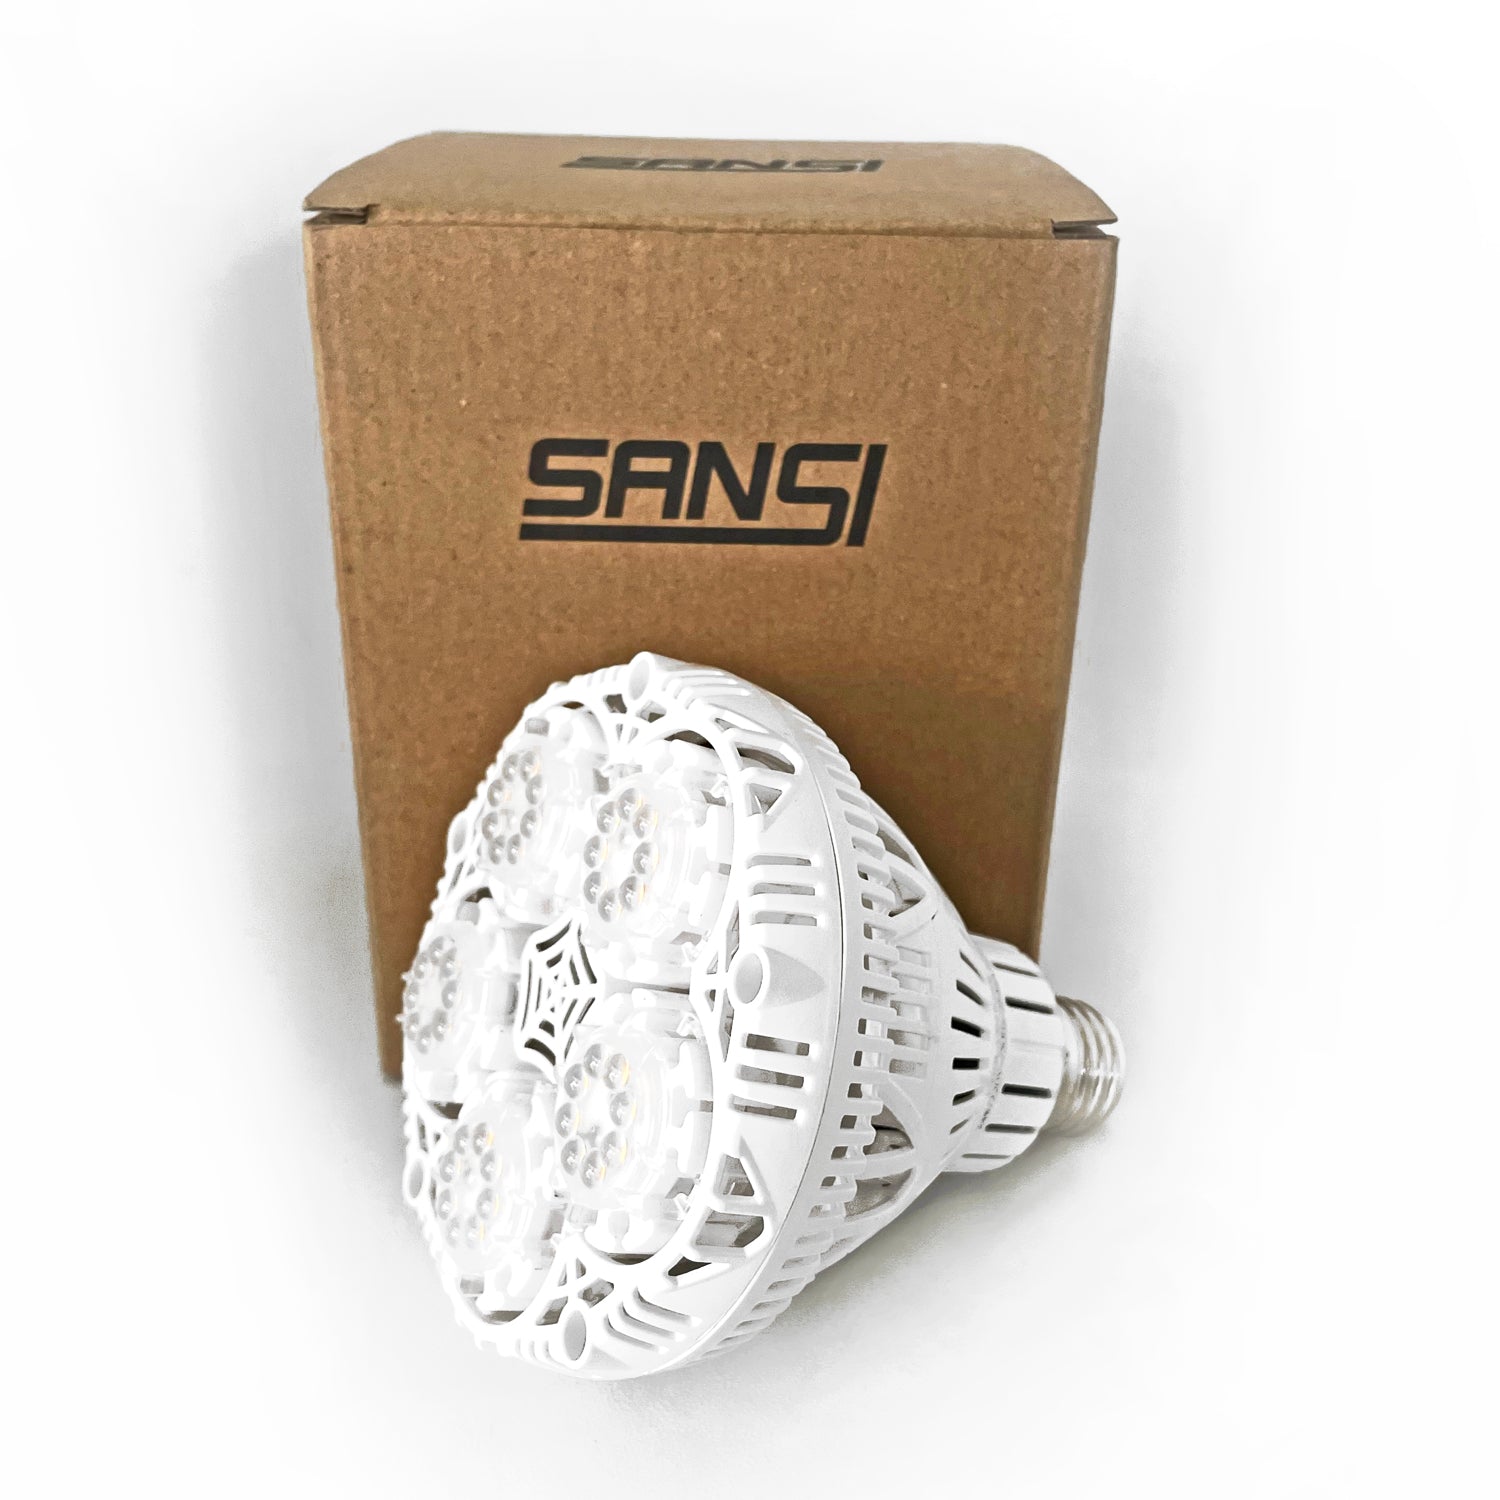 Sansi LED Grow Light - 24 watt, lovethatleaf